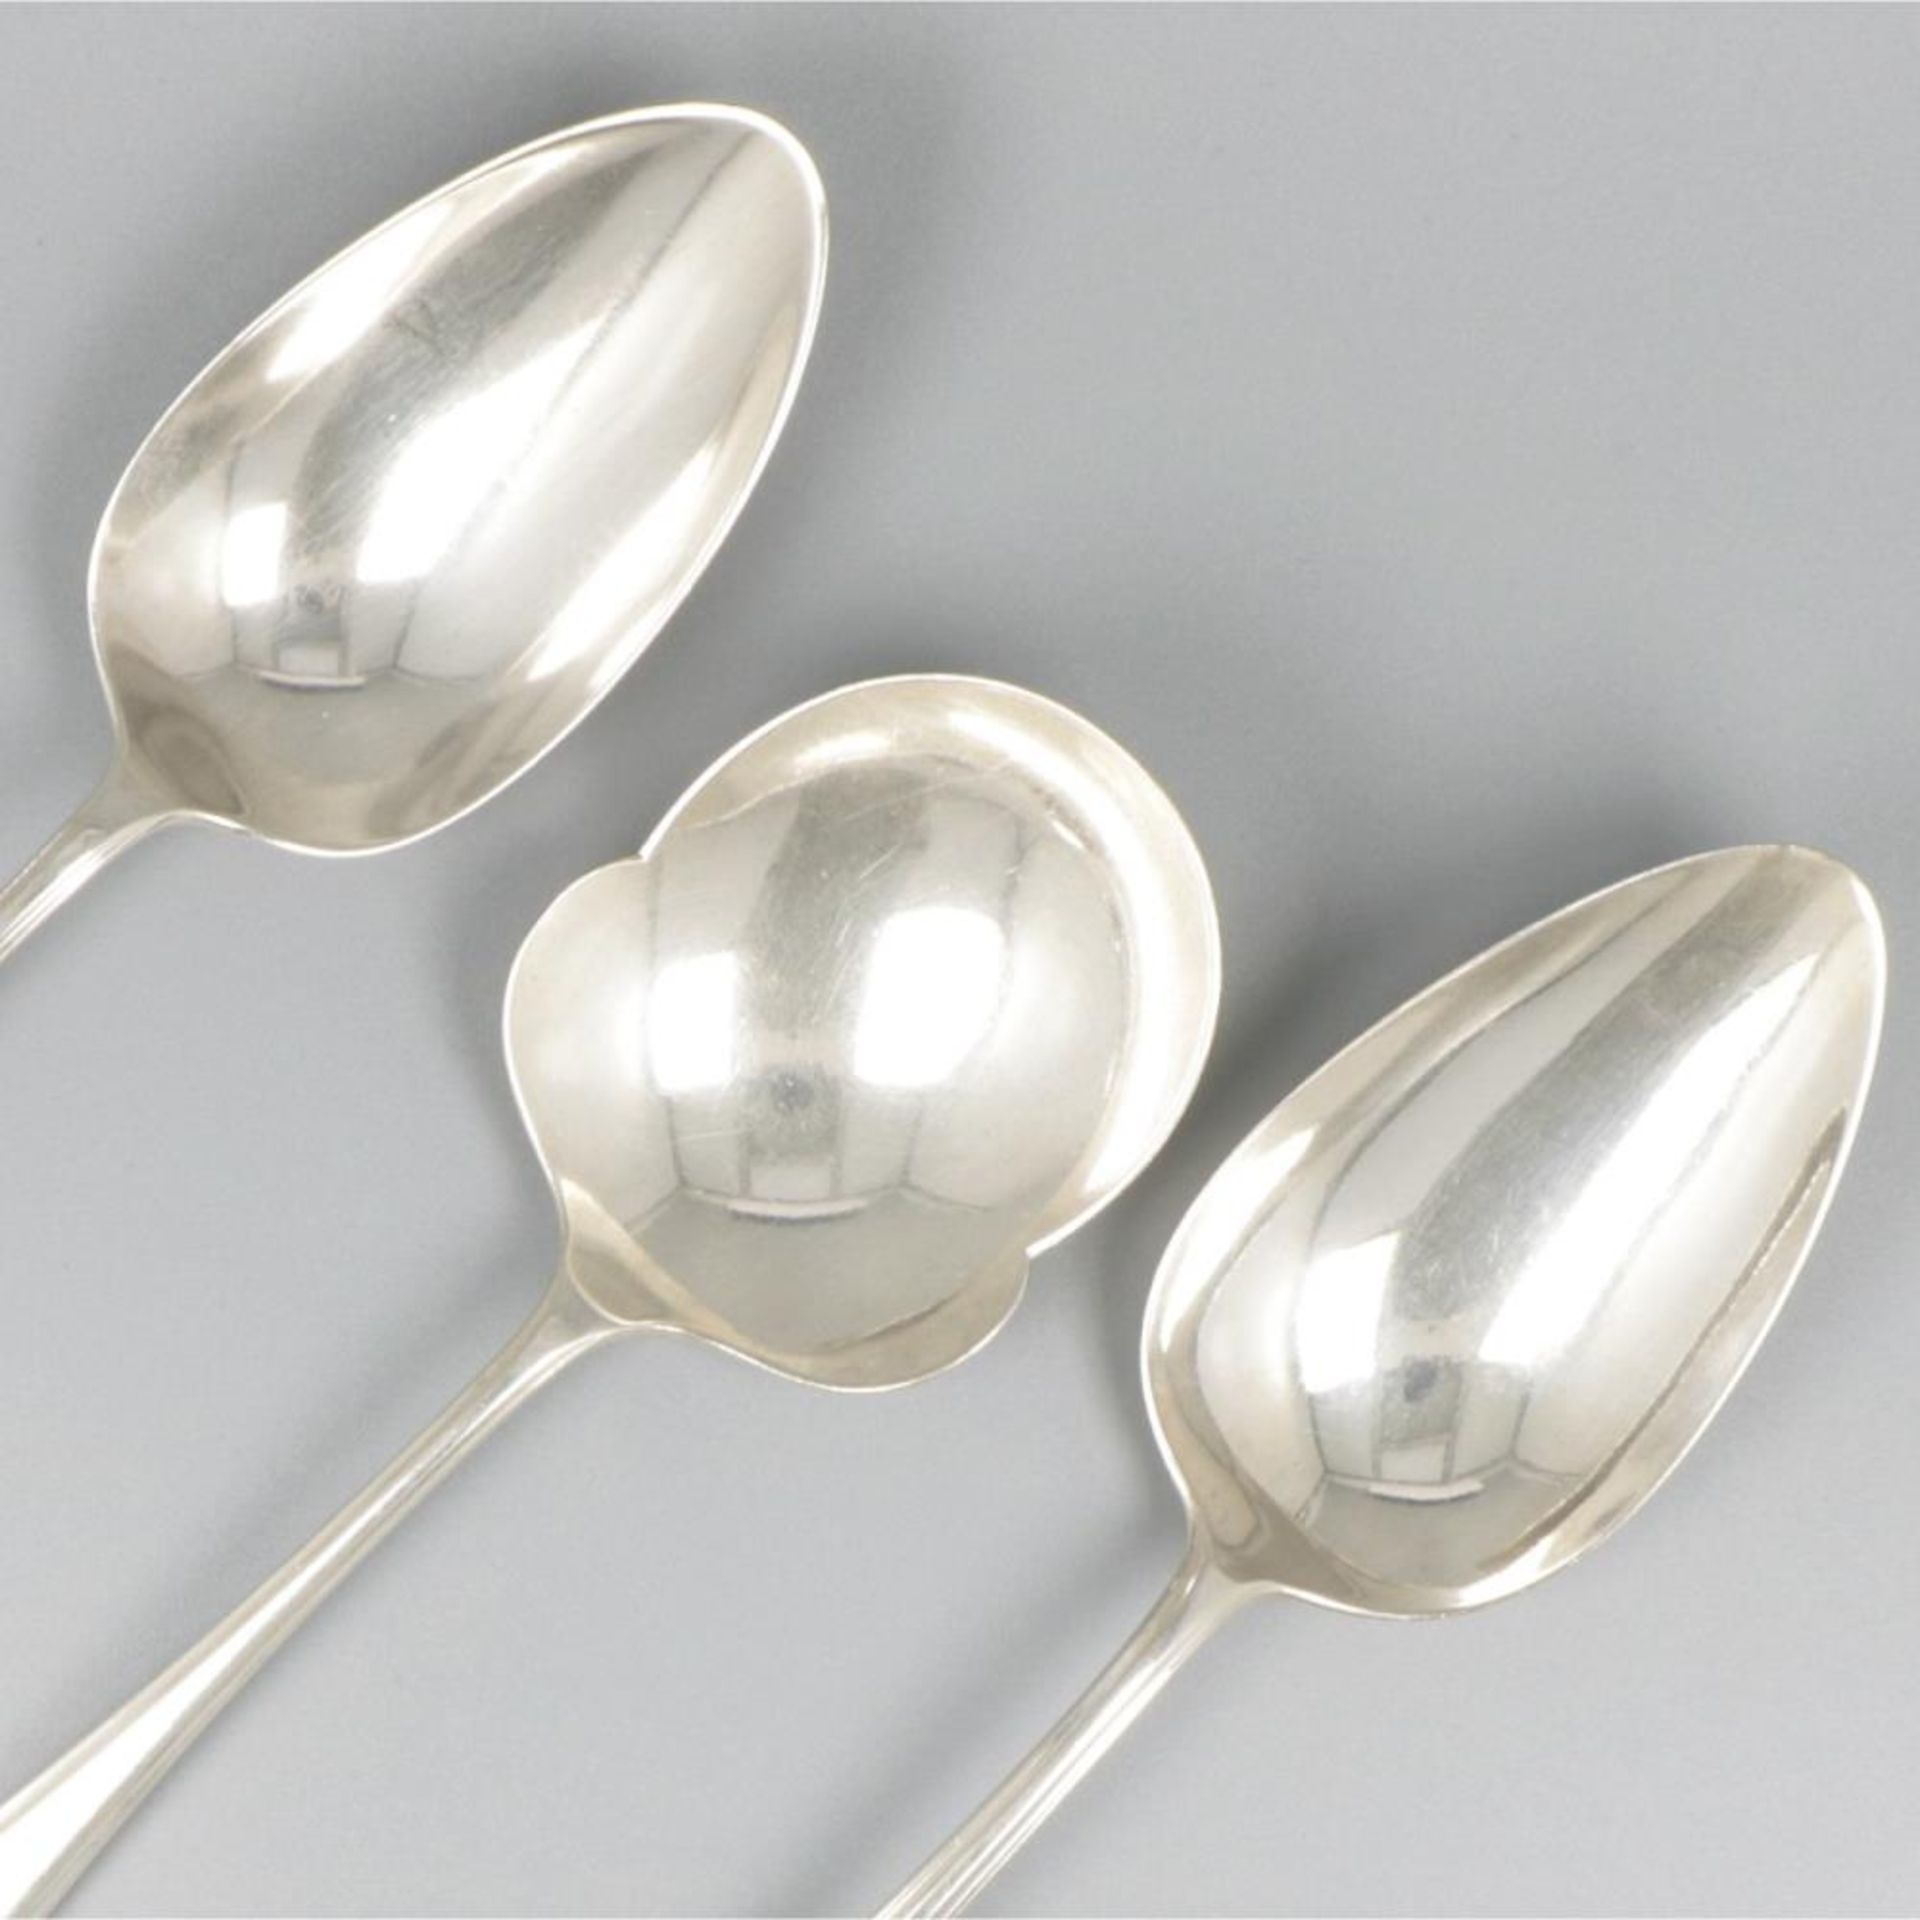 3-piece set of ladles "Hollands Puntfilet" silver. - Bild 4 aus 7